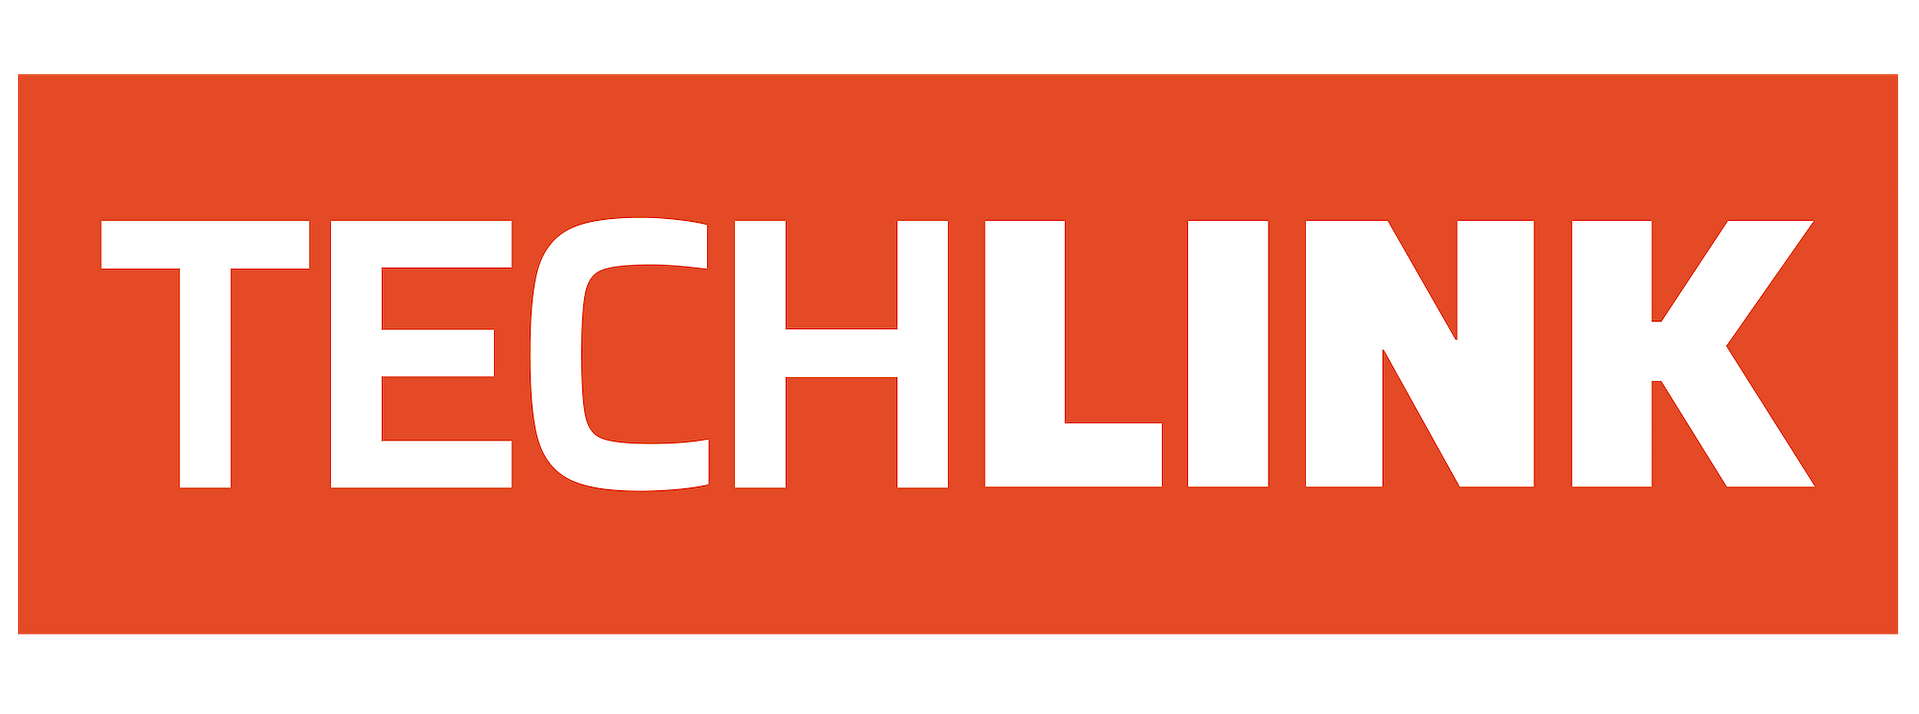 techlink logo full colour